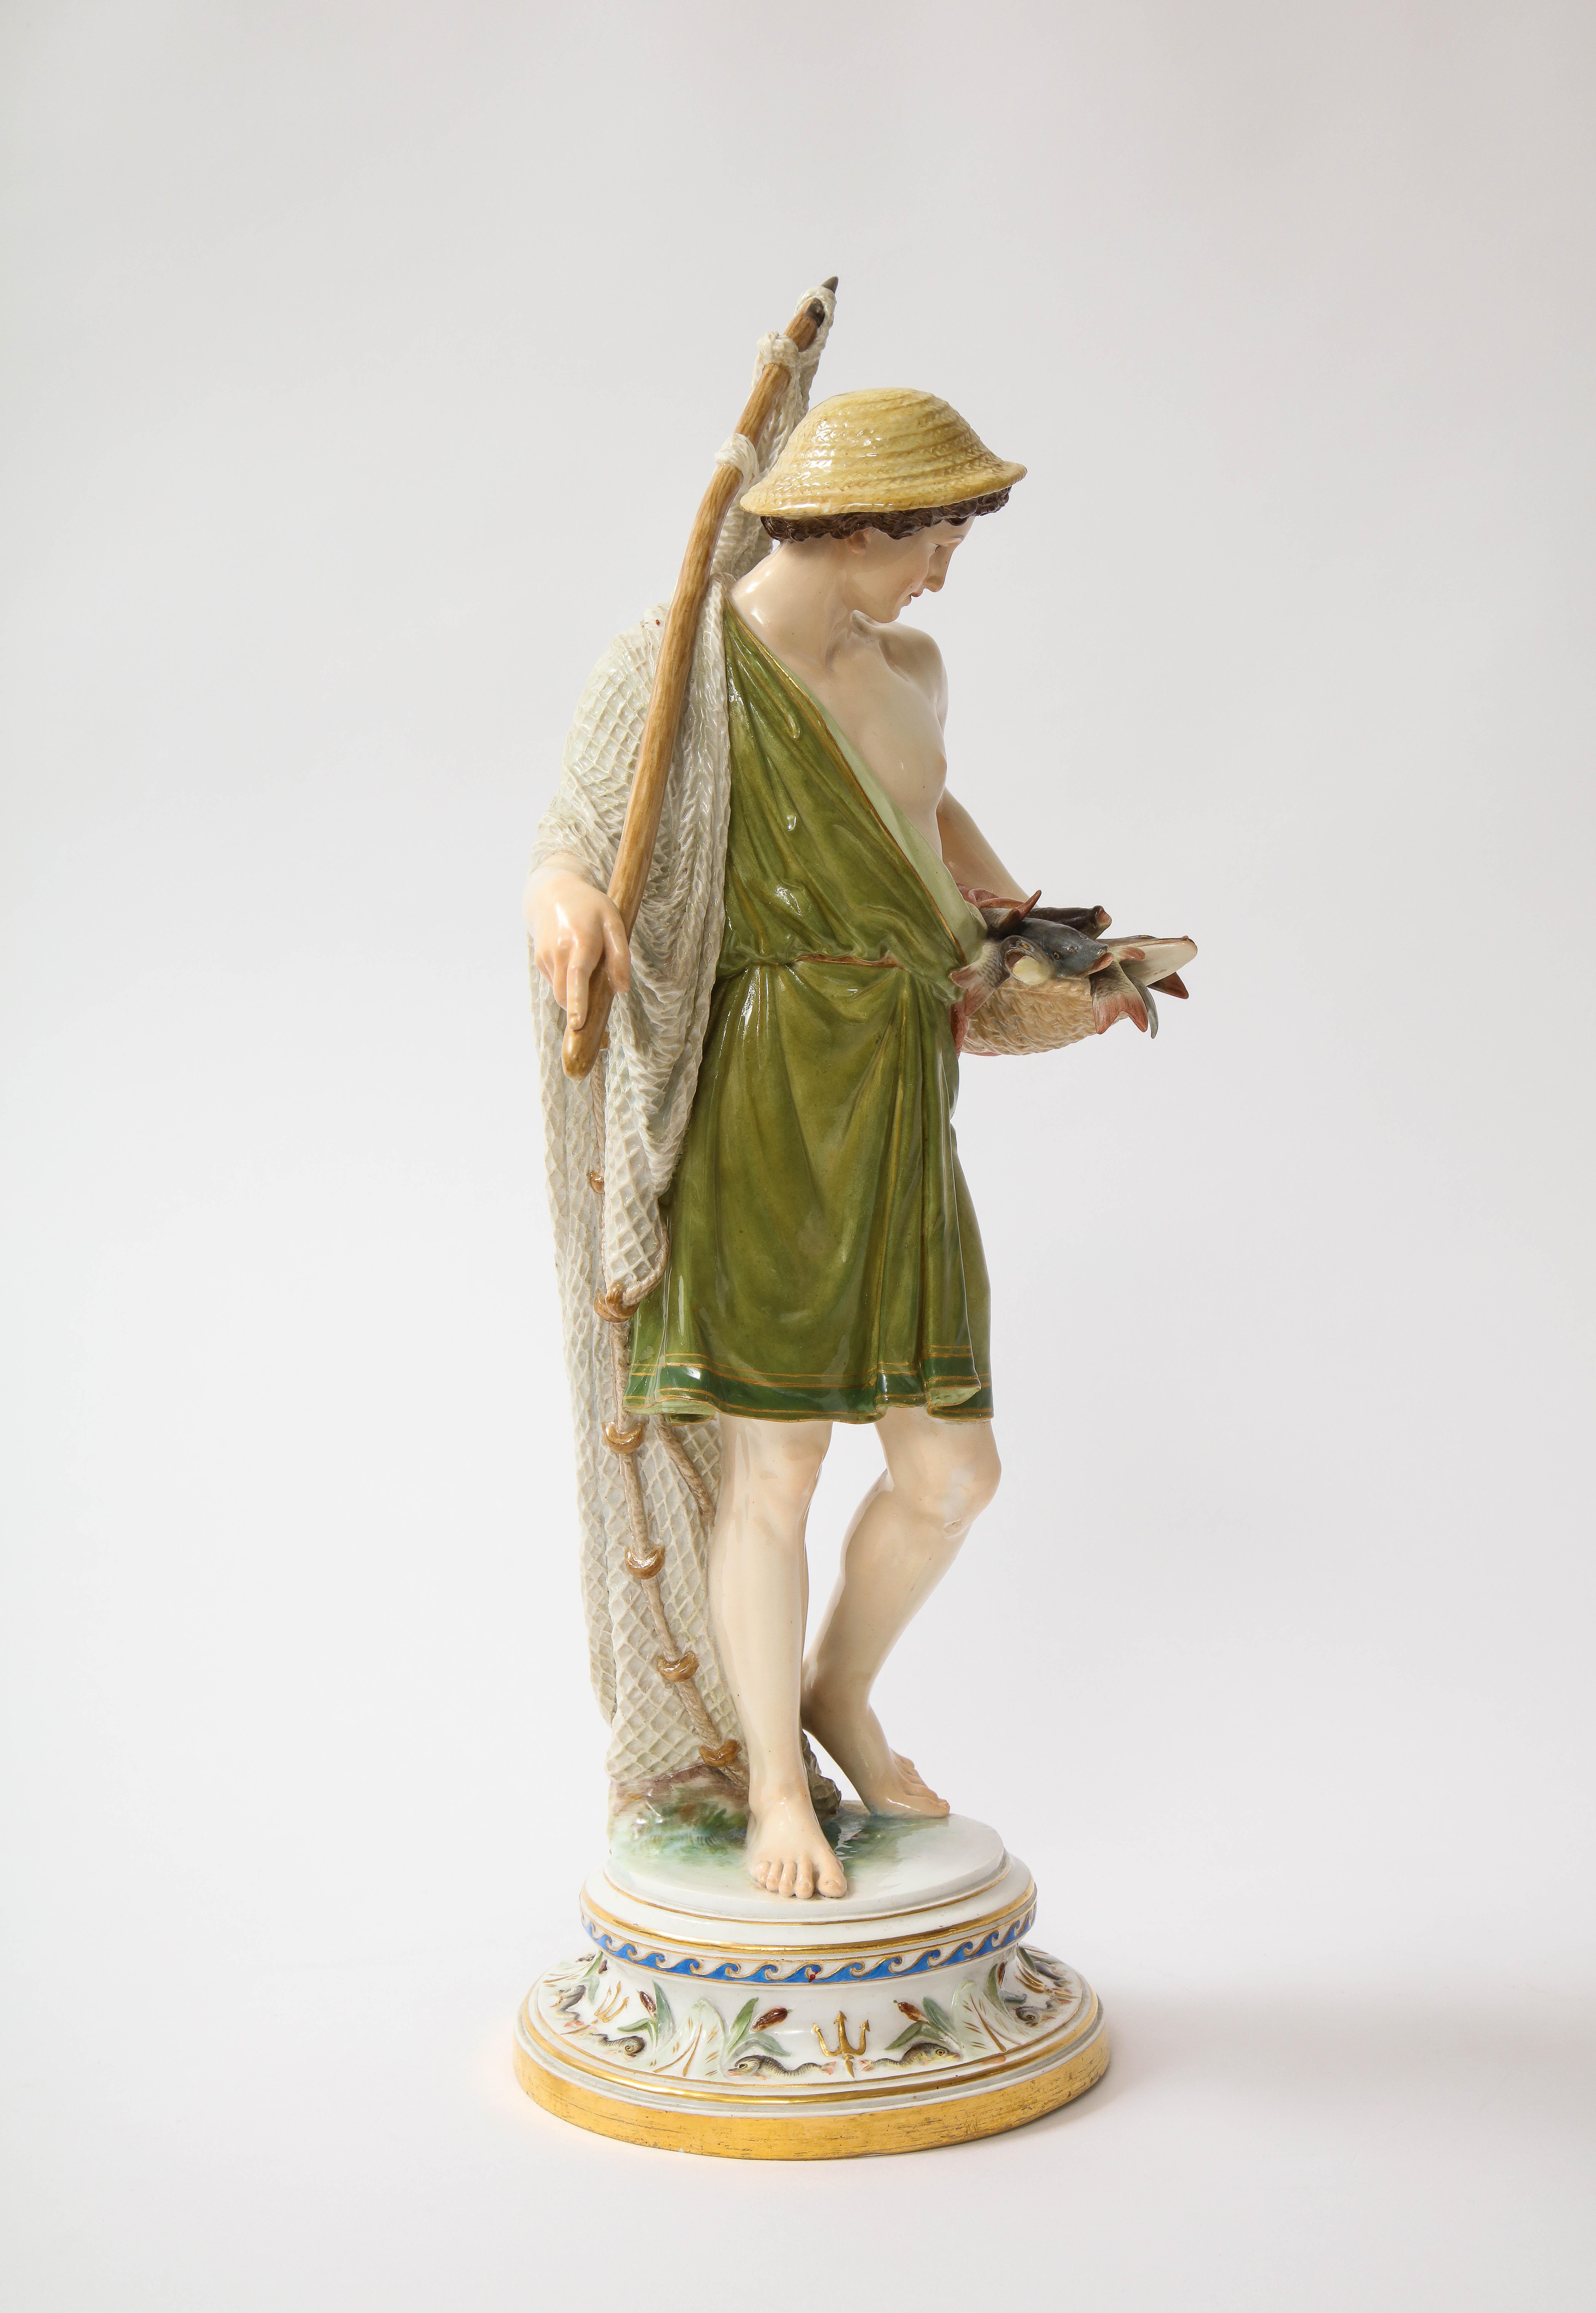 Grande figurine en porcelaine de Meissen du C.I.C. représentant un pêcheur avec un filet.  En montant le regard, l'attention est attirée par la tête du pêcheur, couronnée d'un chapeau de paille utilitaire merveilleusement fabriqué. Sous ses bords,